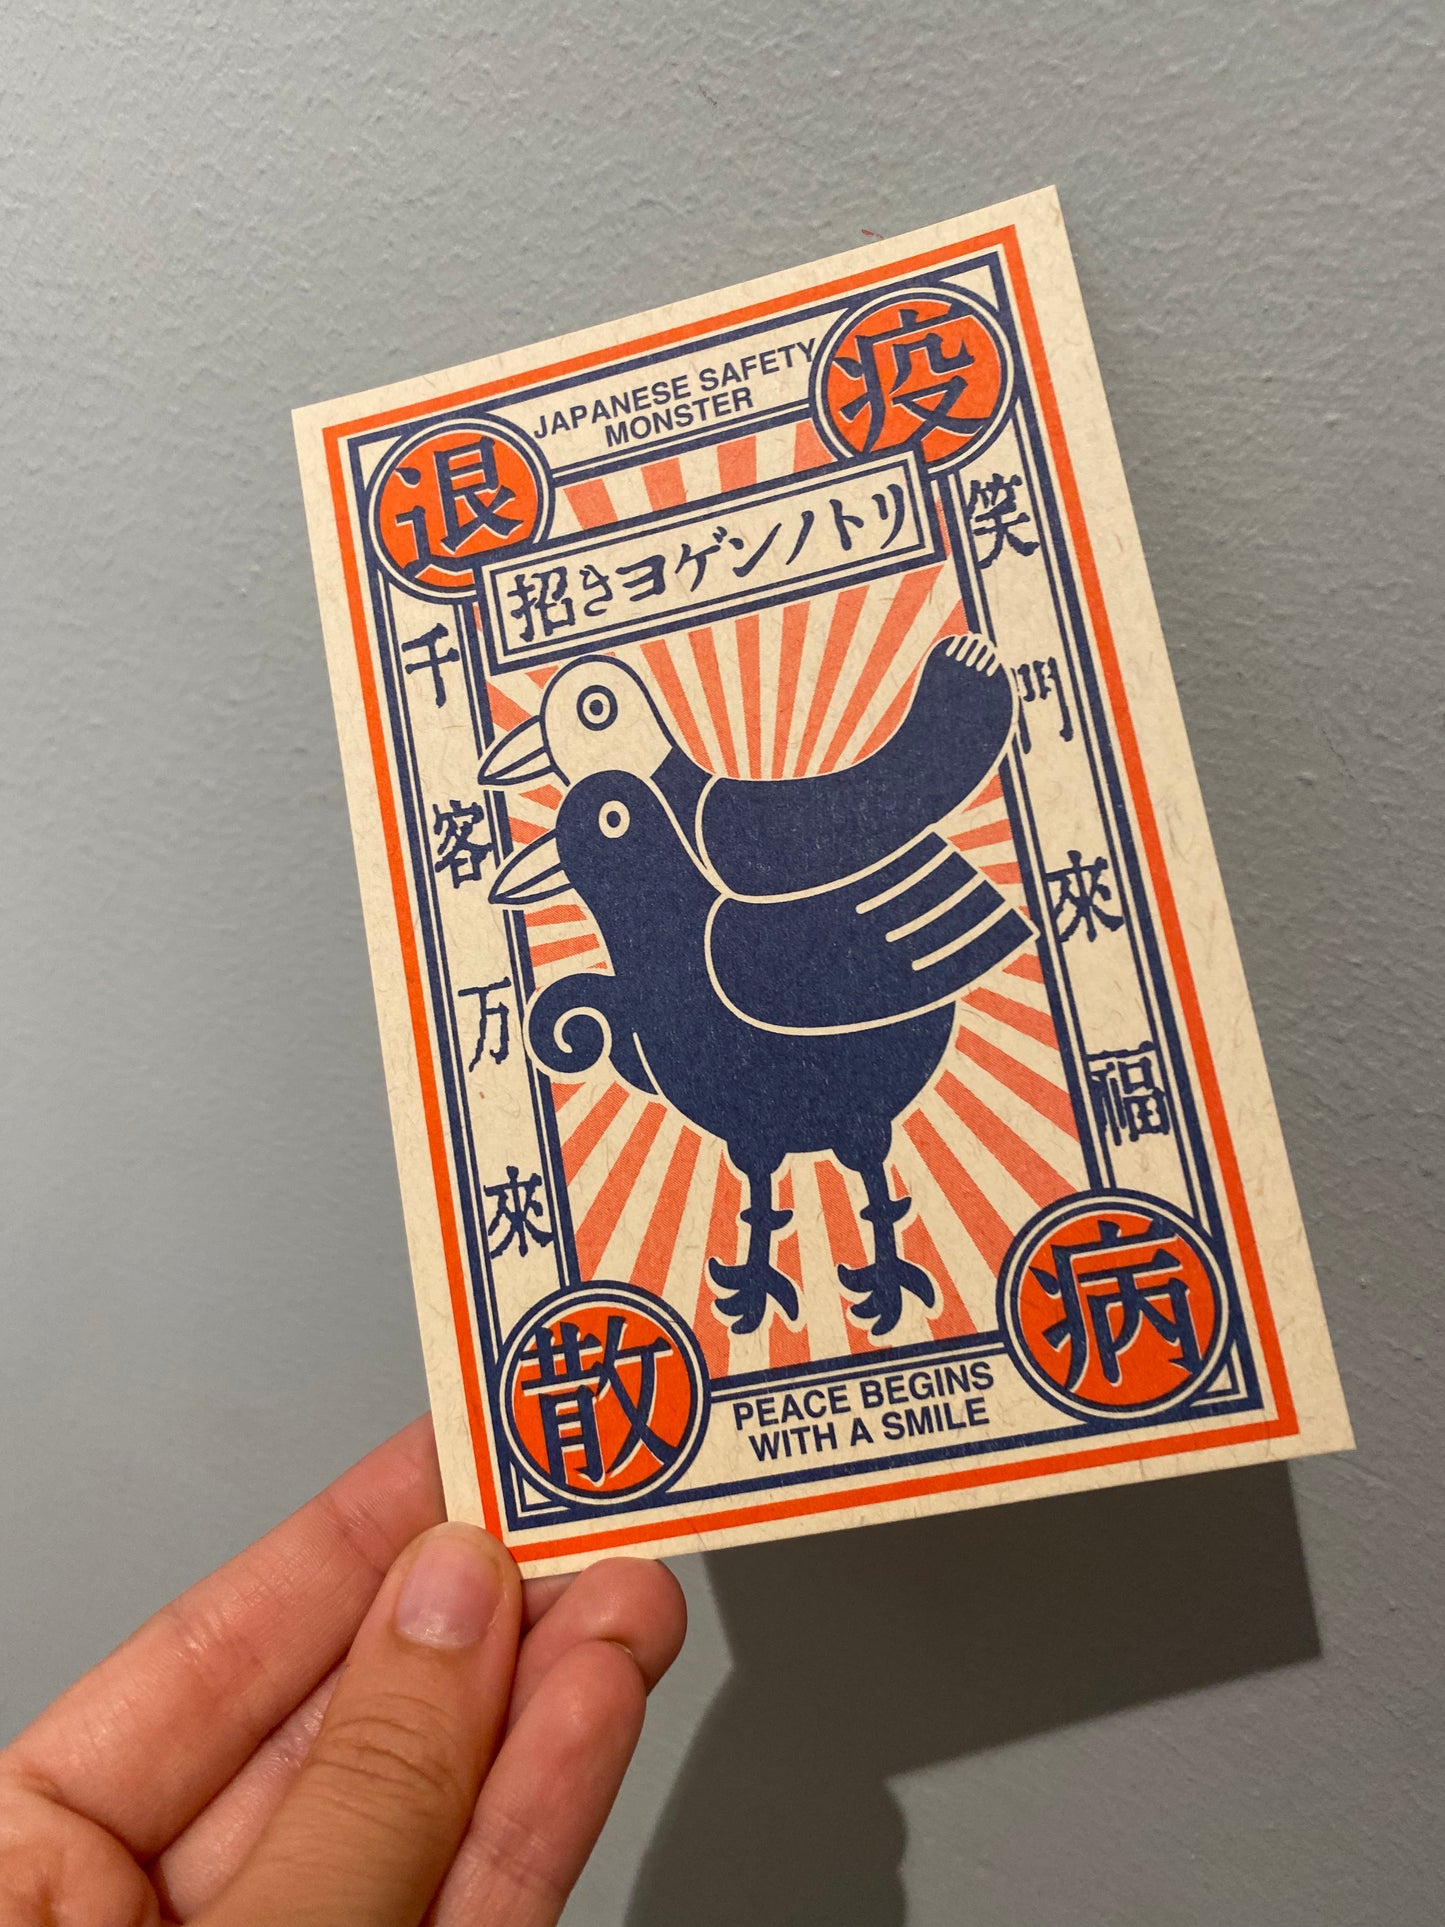 Postkort med japansk ‘safety monster’ og citater